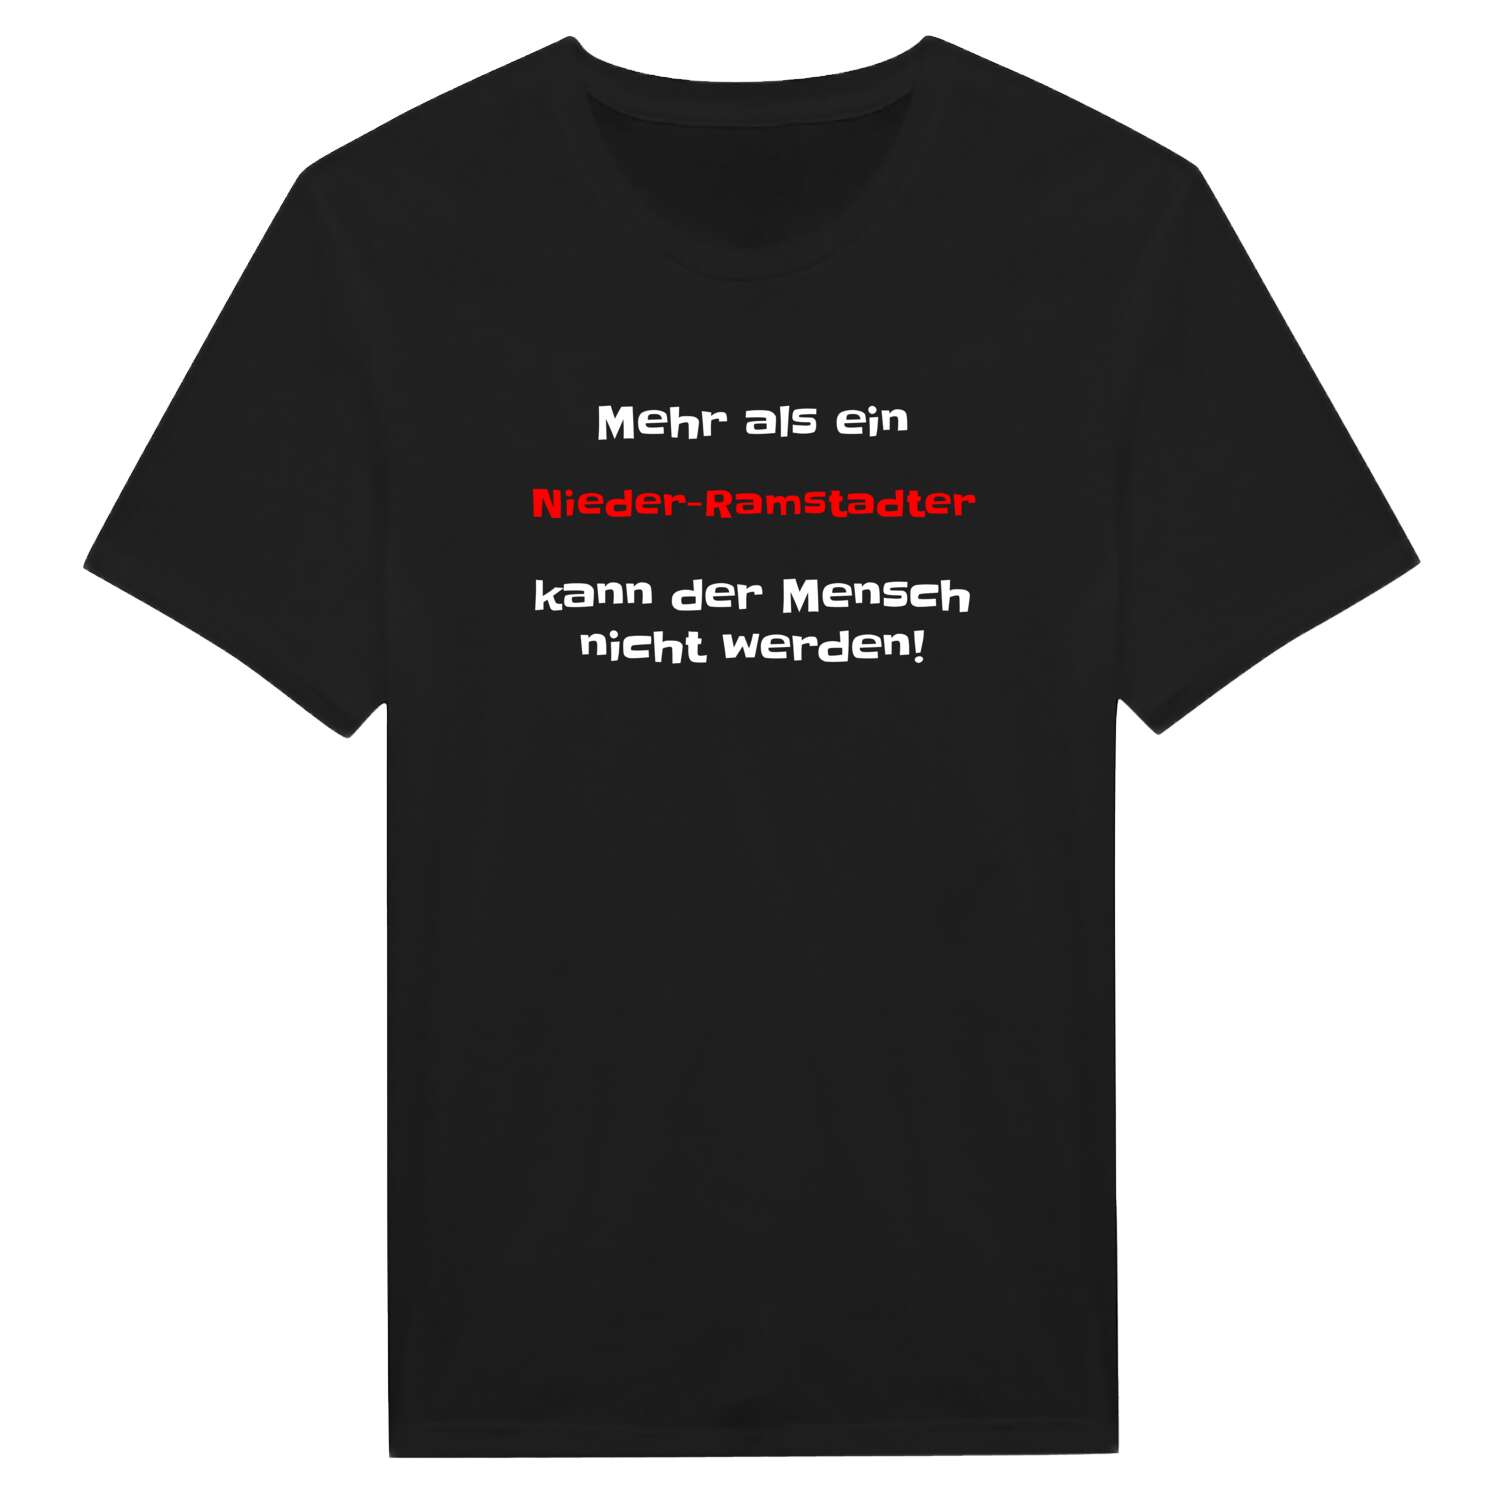 Nieder-Ramstadt T-Shirt »Mehr als ein«